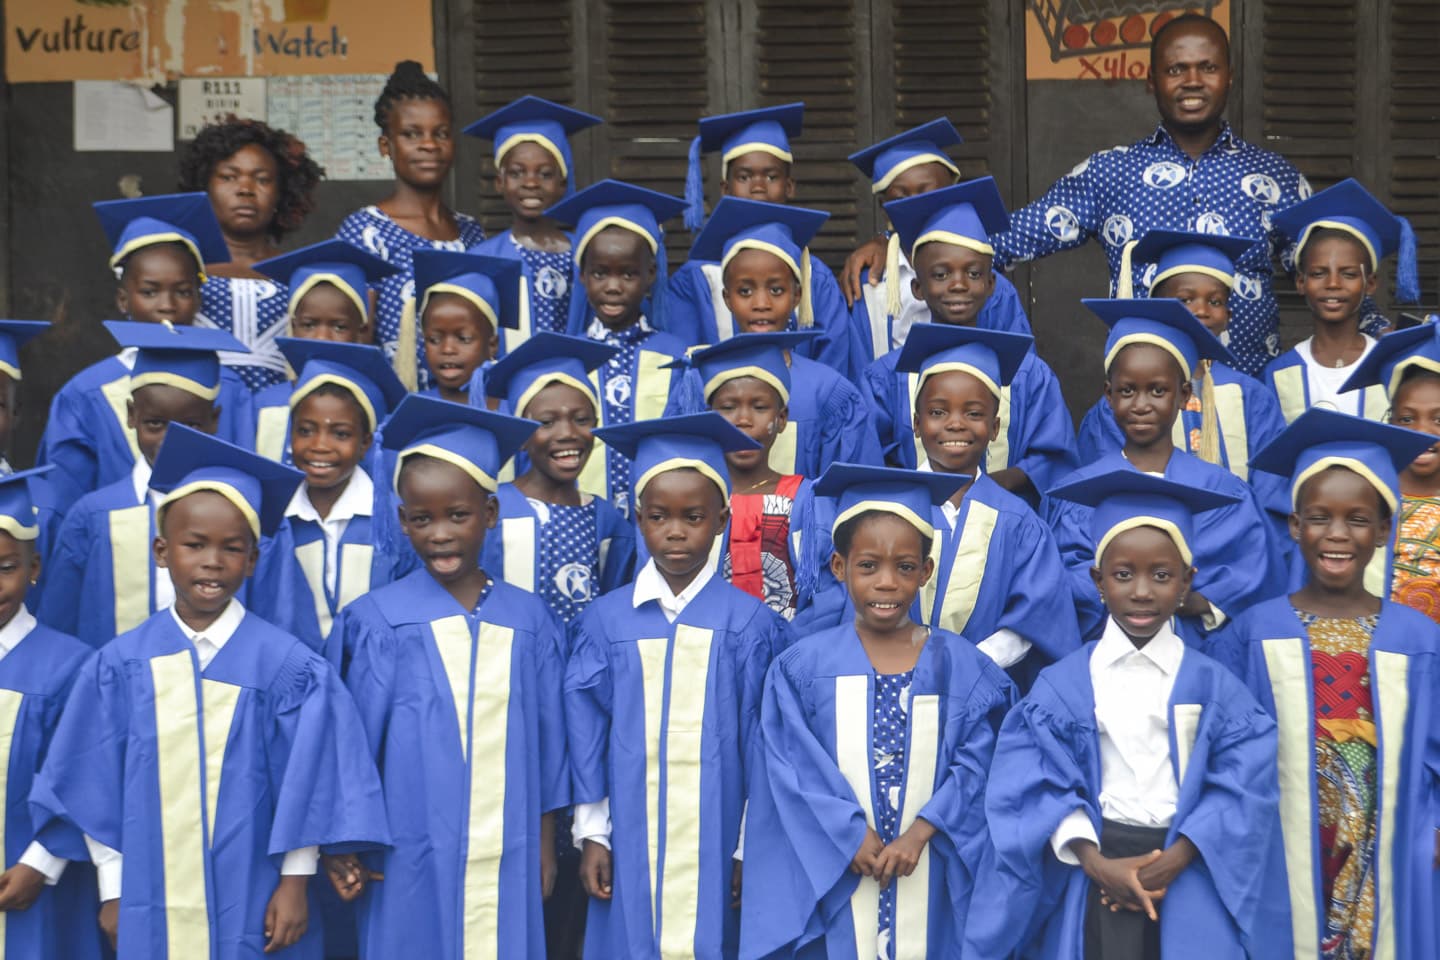 Klassfoto vid skolavslutning i Ghana.